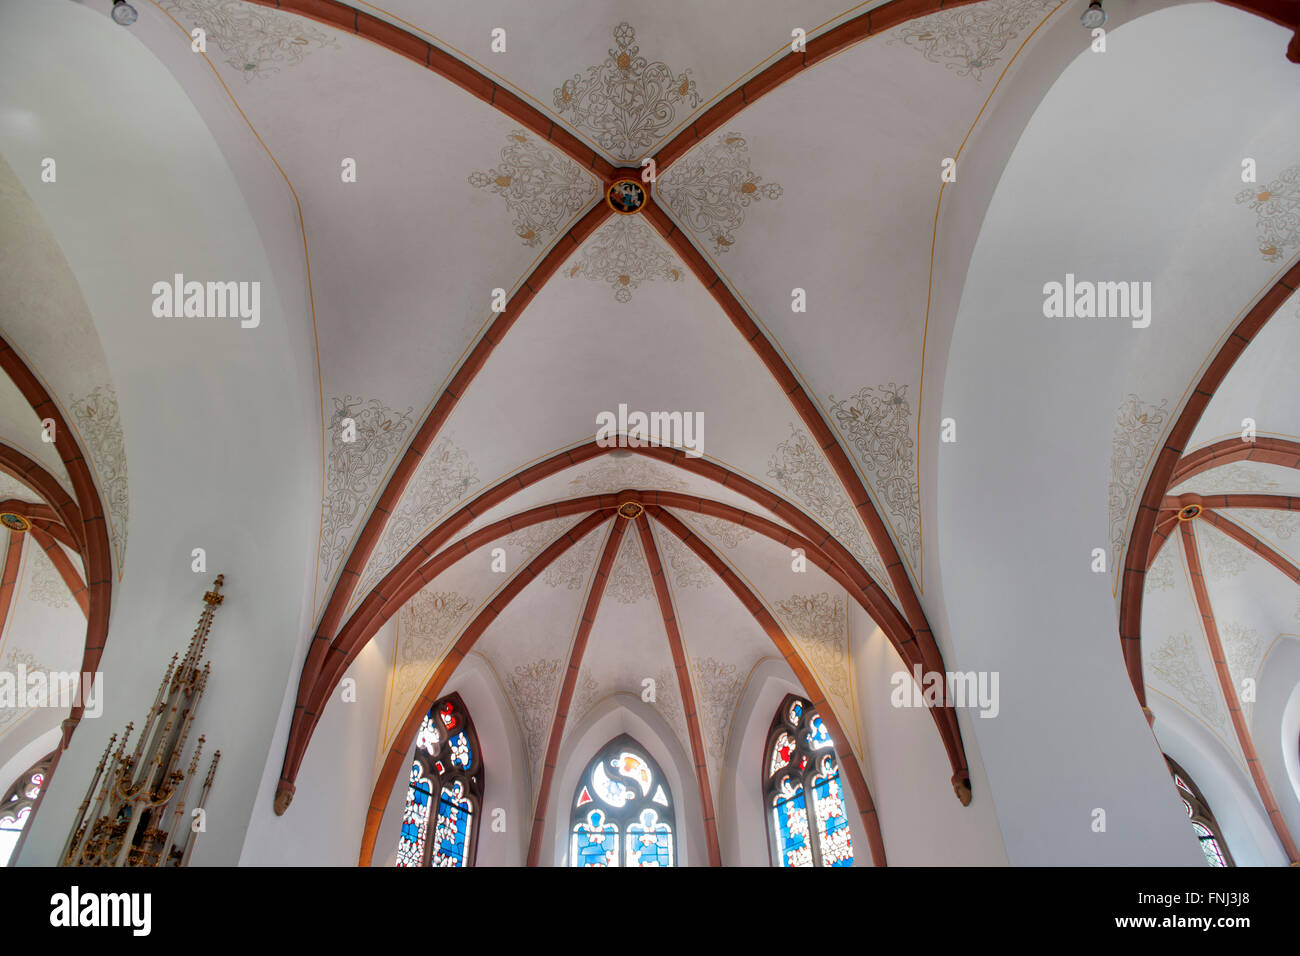 Deutschland, Nordrhein-Westfalen, Rhein-Sieg-Kreis, Much, katholische Kirche Sankt Martinus, Kreuzrippengewölbe im spätgotischen Stock Photo